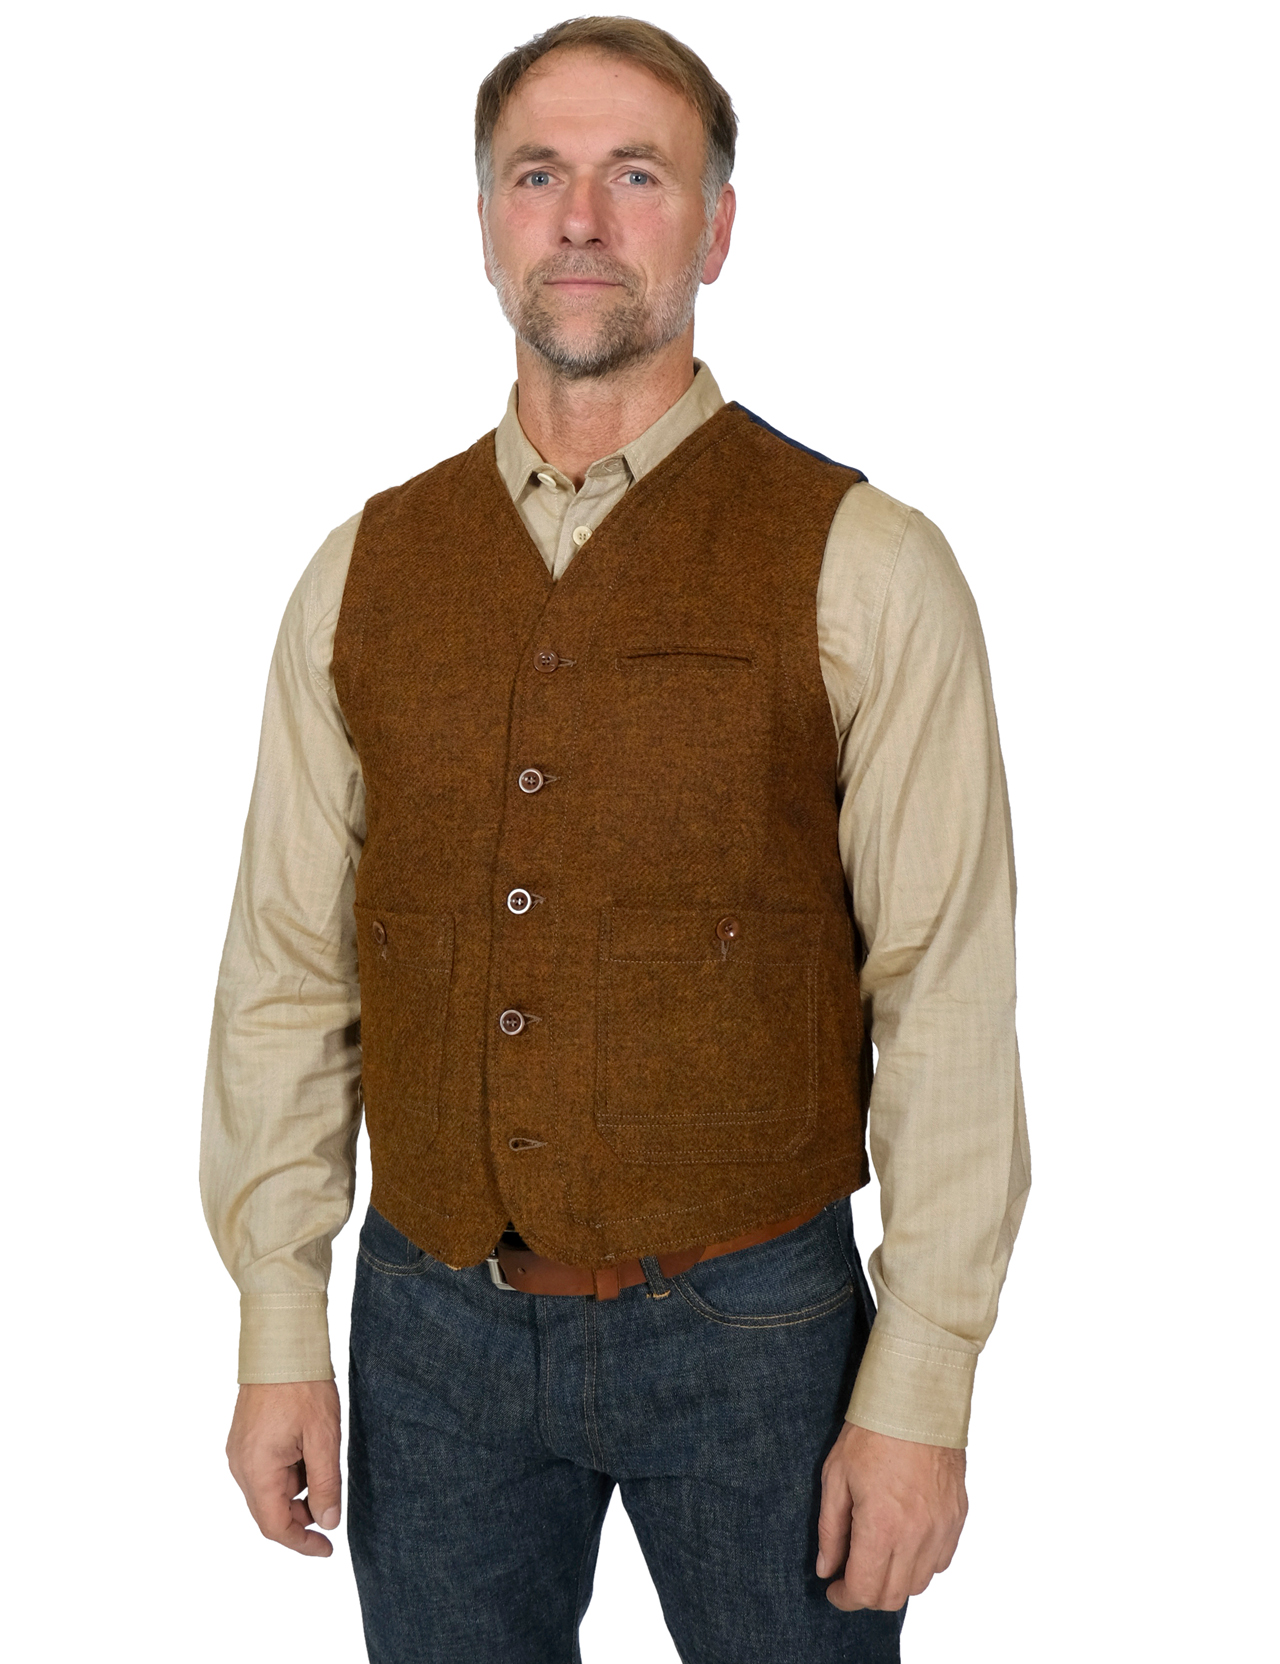 Captain Santors - Wool Under Jacket Vest - Biscuit